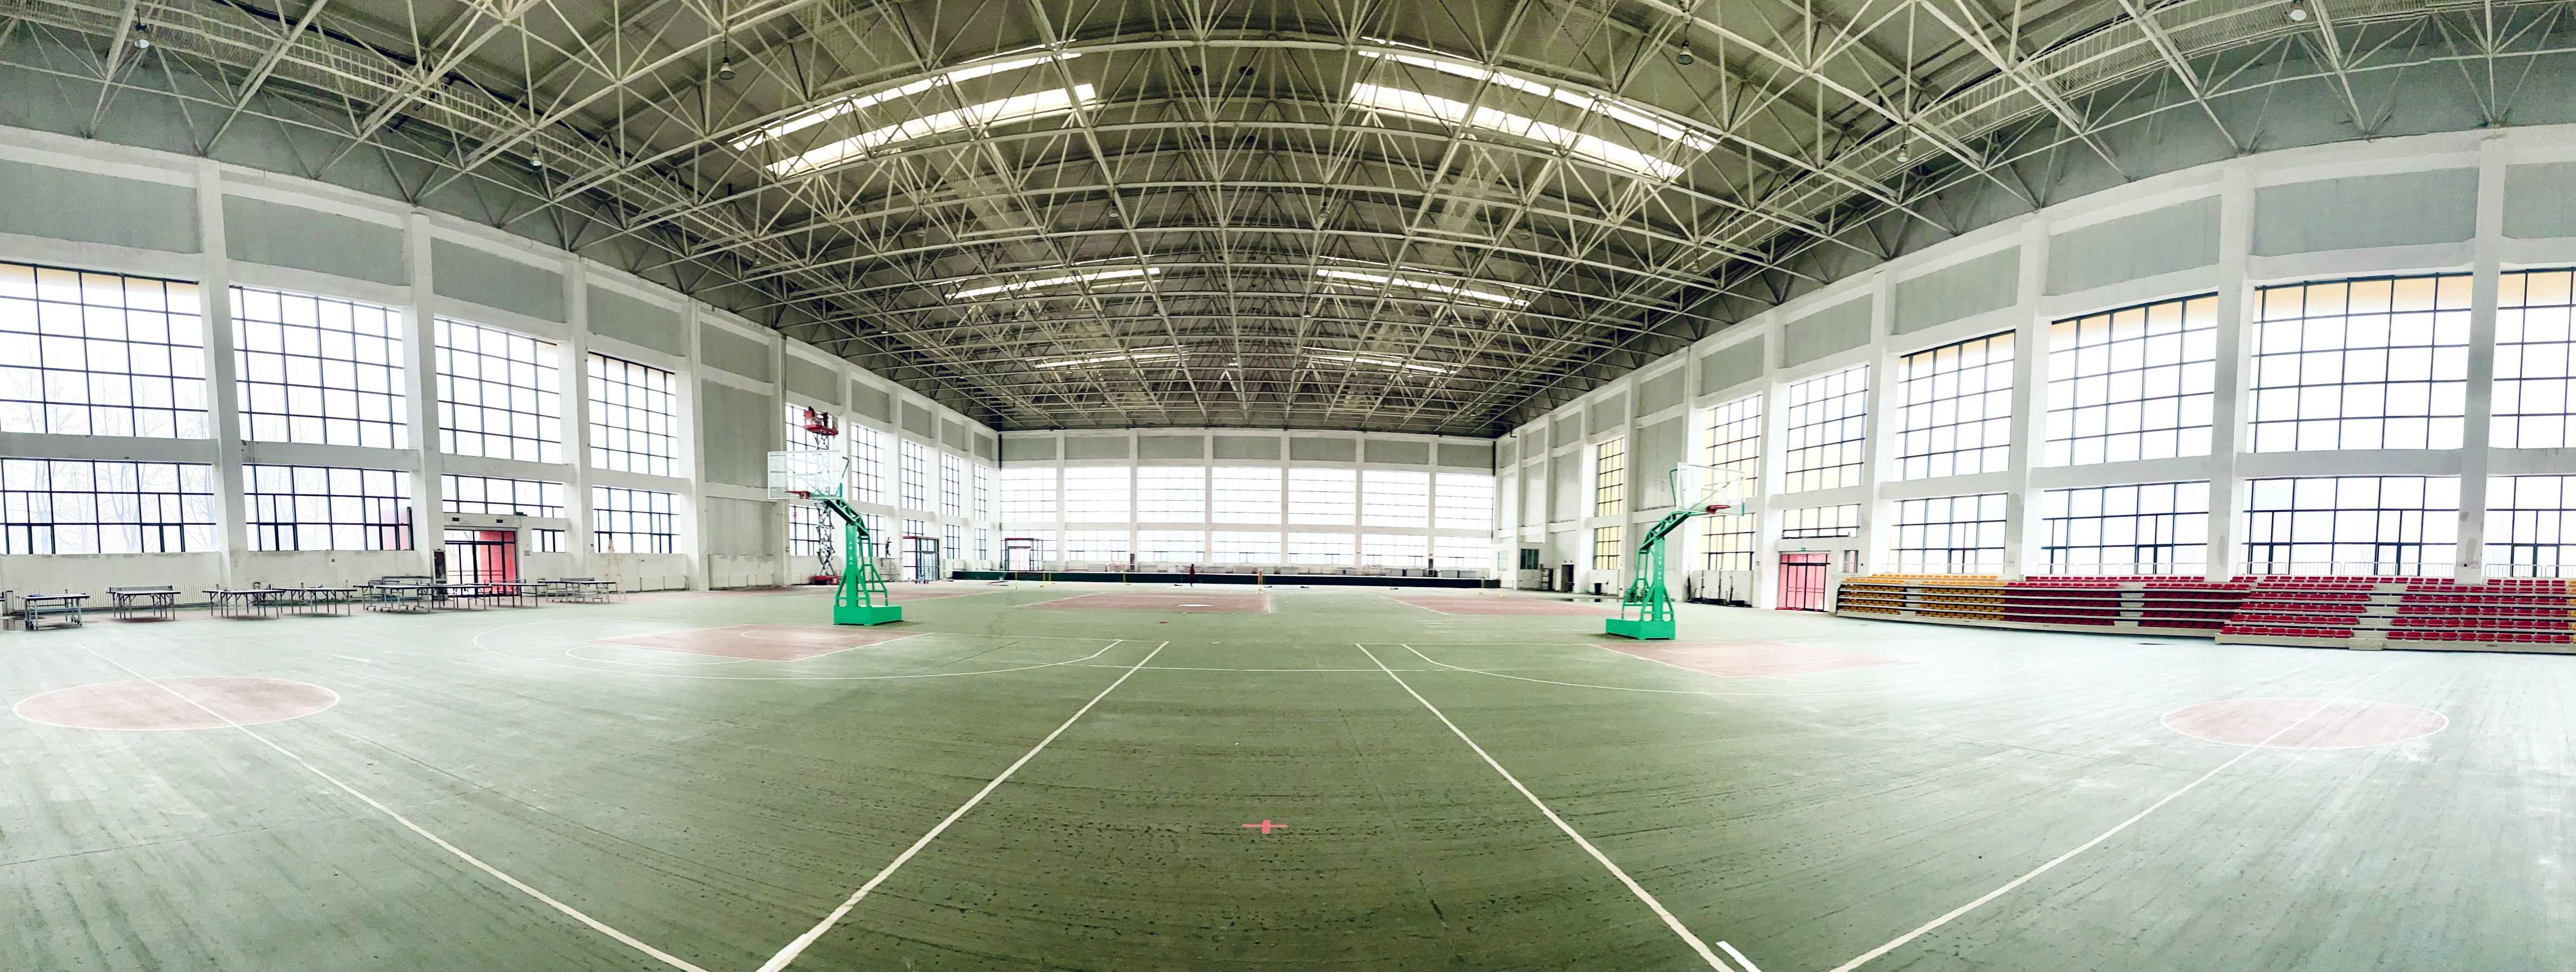 山东省安装工程技工学校室内体育场内部